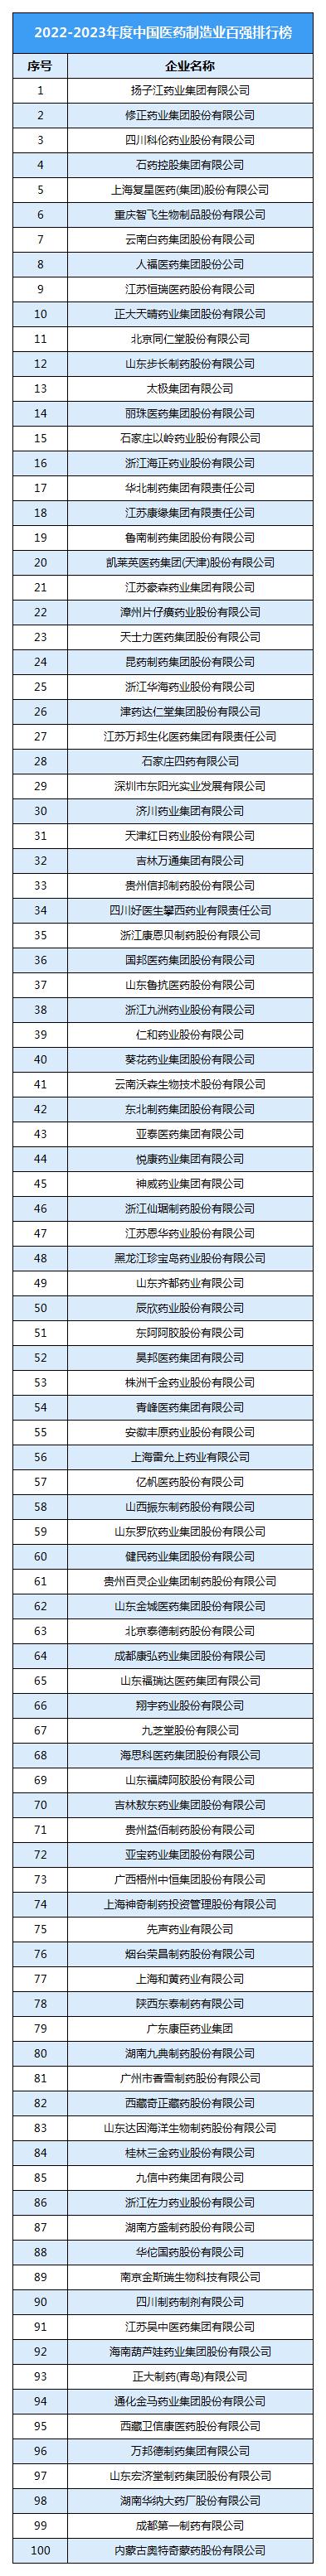 中國醫藥制造行業企業TOP100